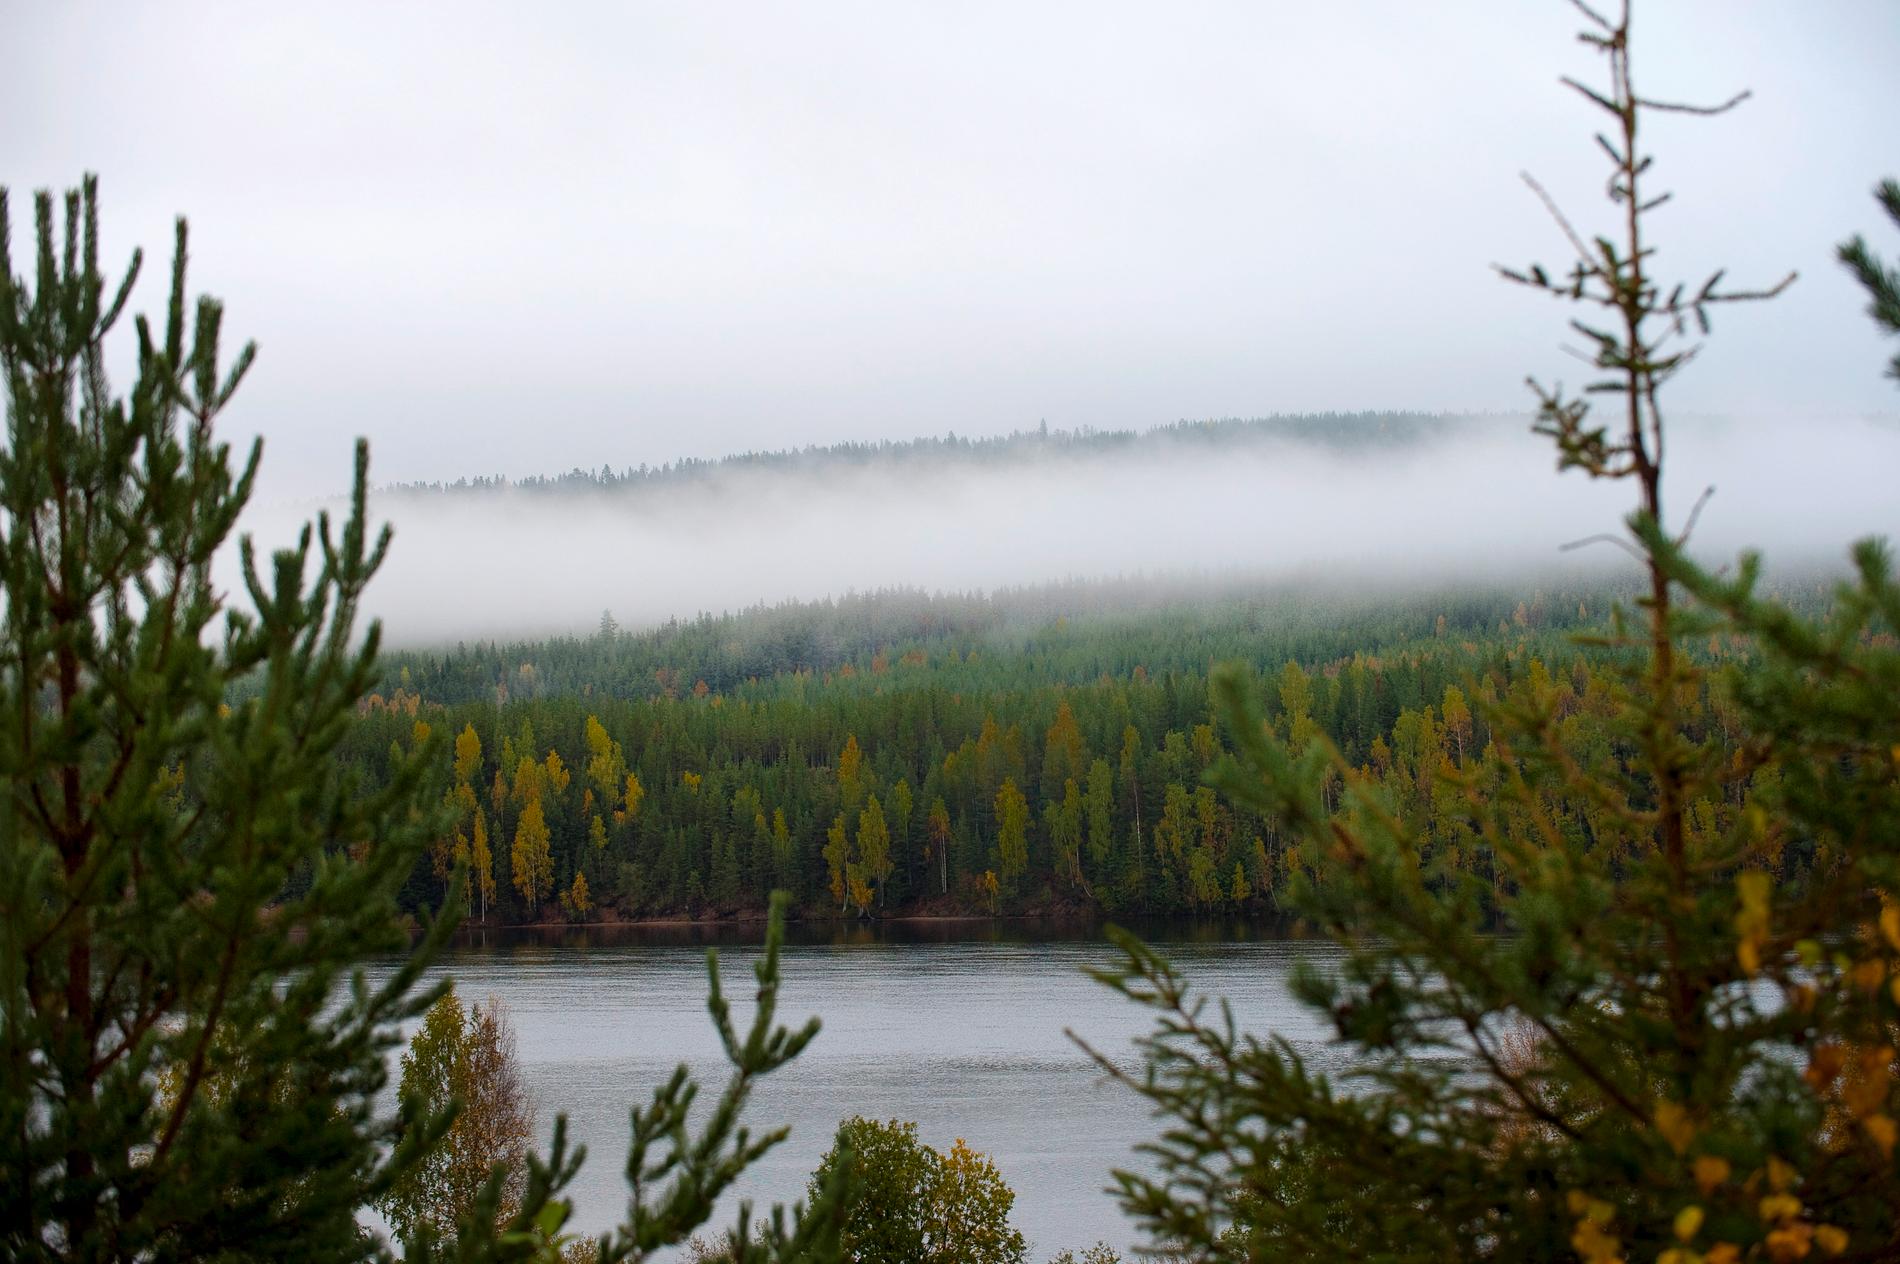 Barrskog i närheten av Jokkmokk i Norrbotten. Sådana skogar kan komma att förändras när temperaturen stiger.